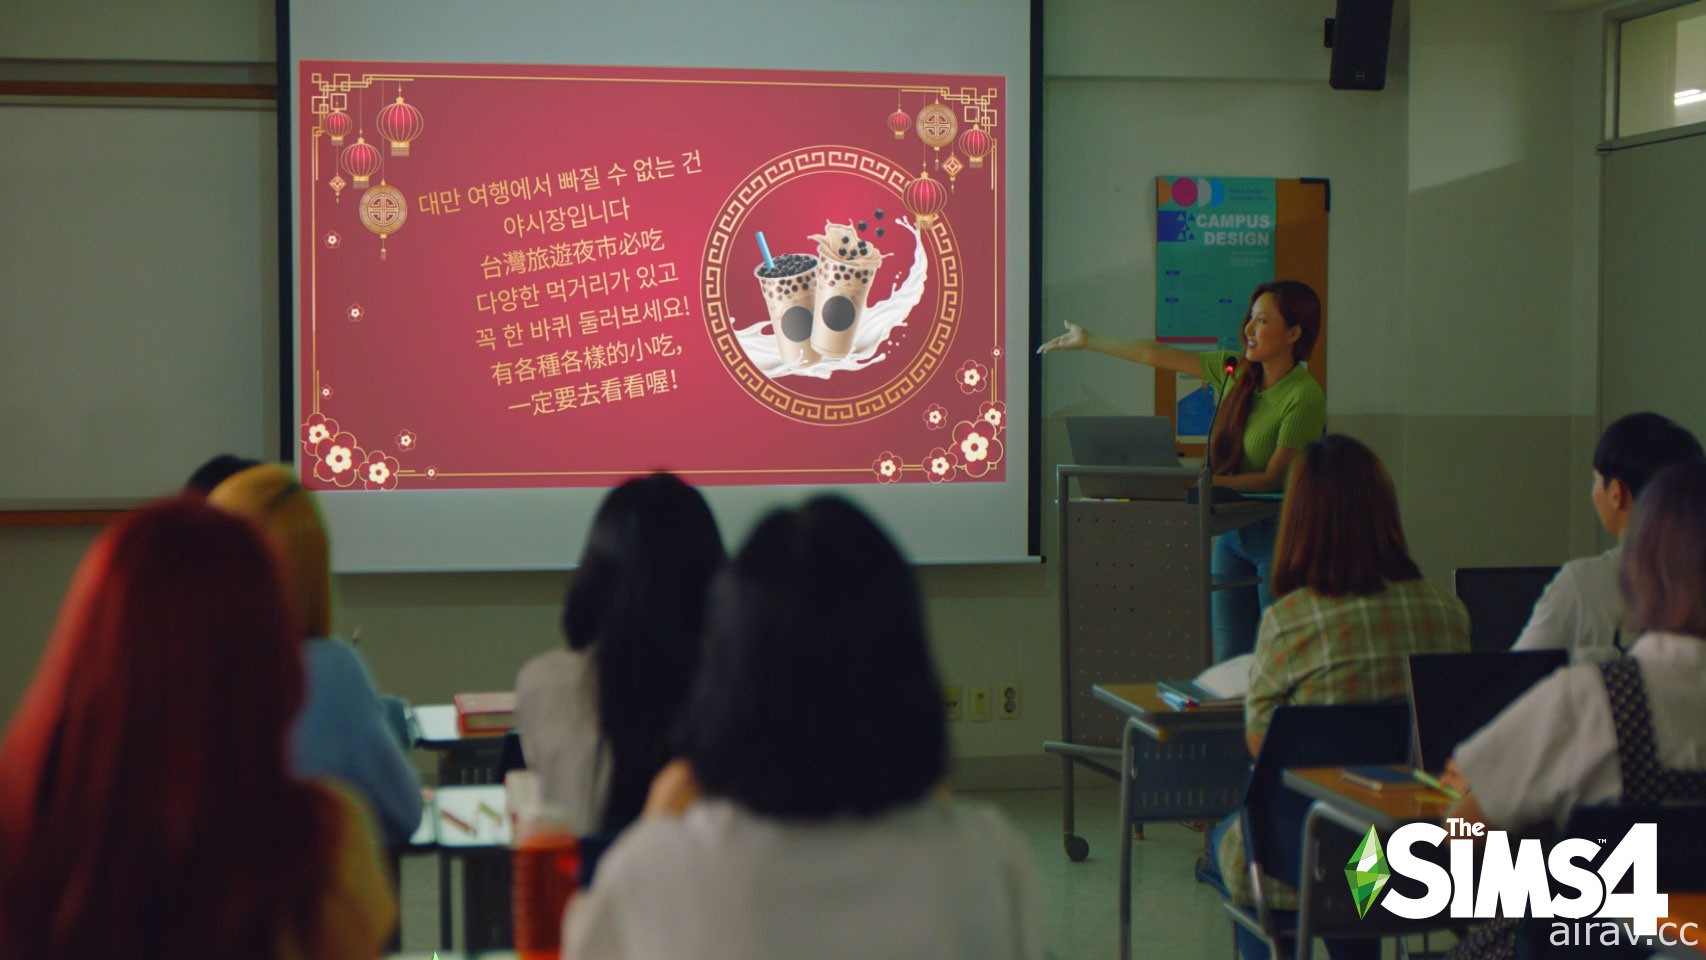 適逢開學季《模擬市民 4》釋出華莎演出新宣傳影片 搭配主題推出「我的校園生活」創作賽